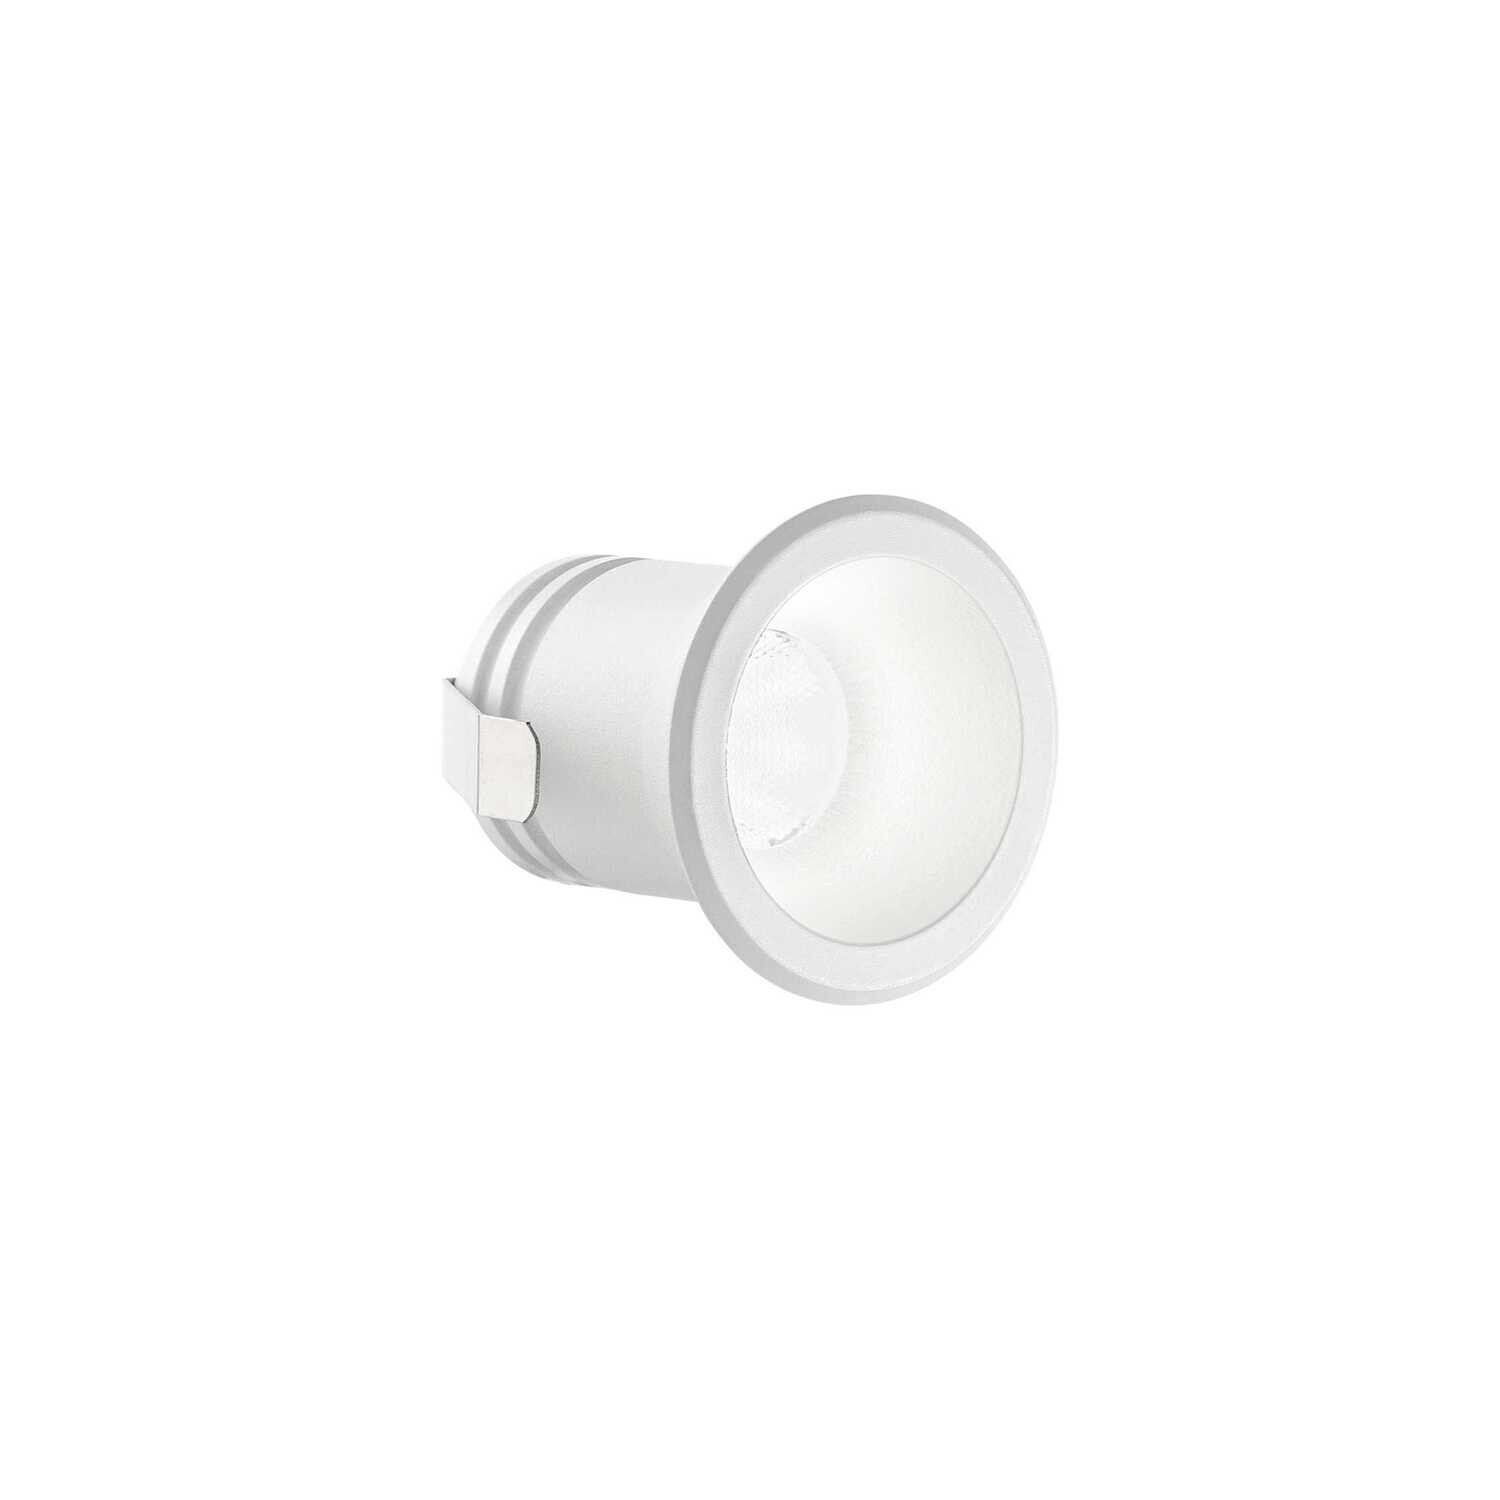 VIRUS LED Spot-light 3W 210lm White/White